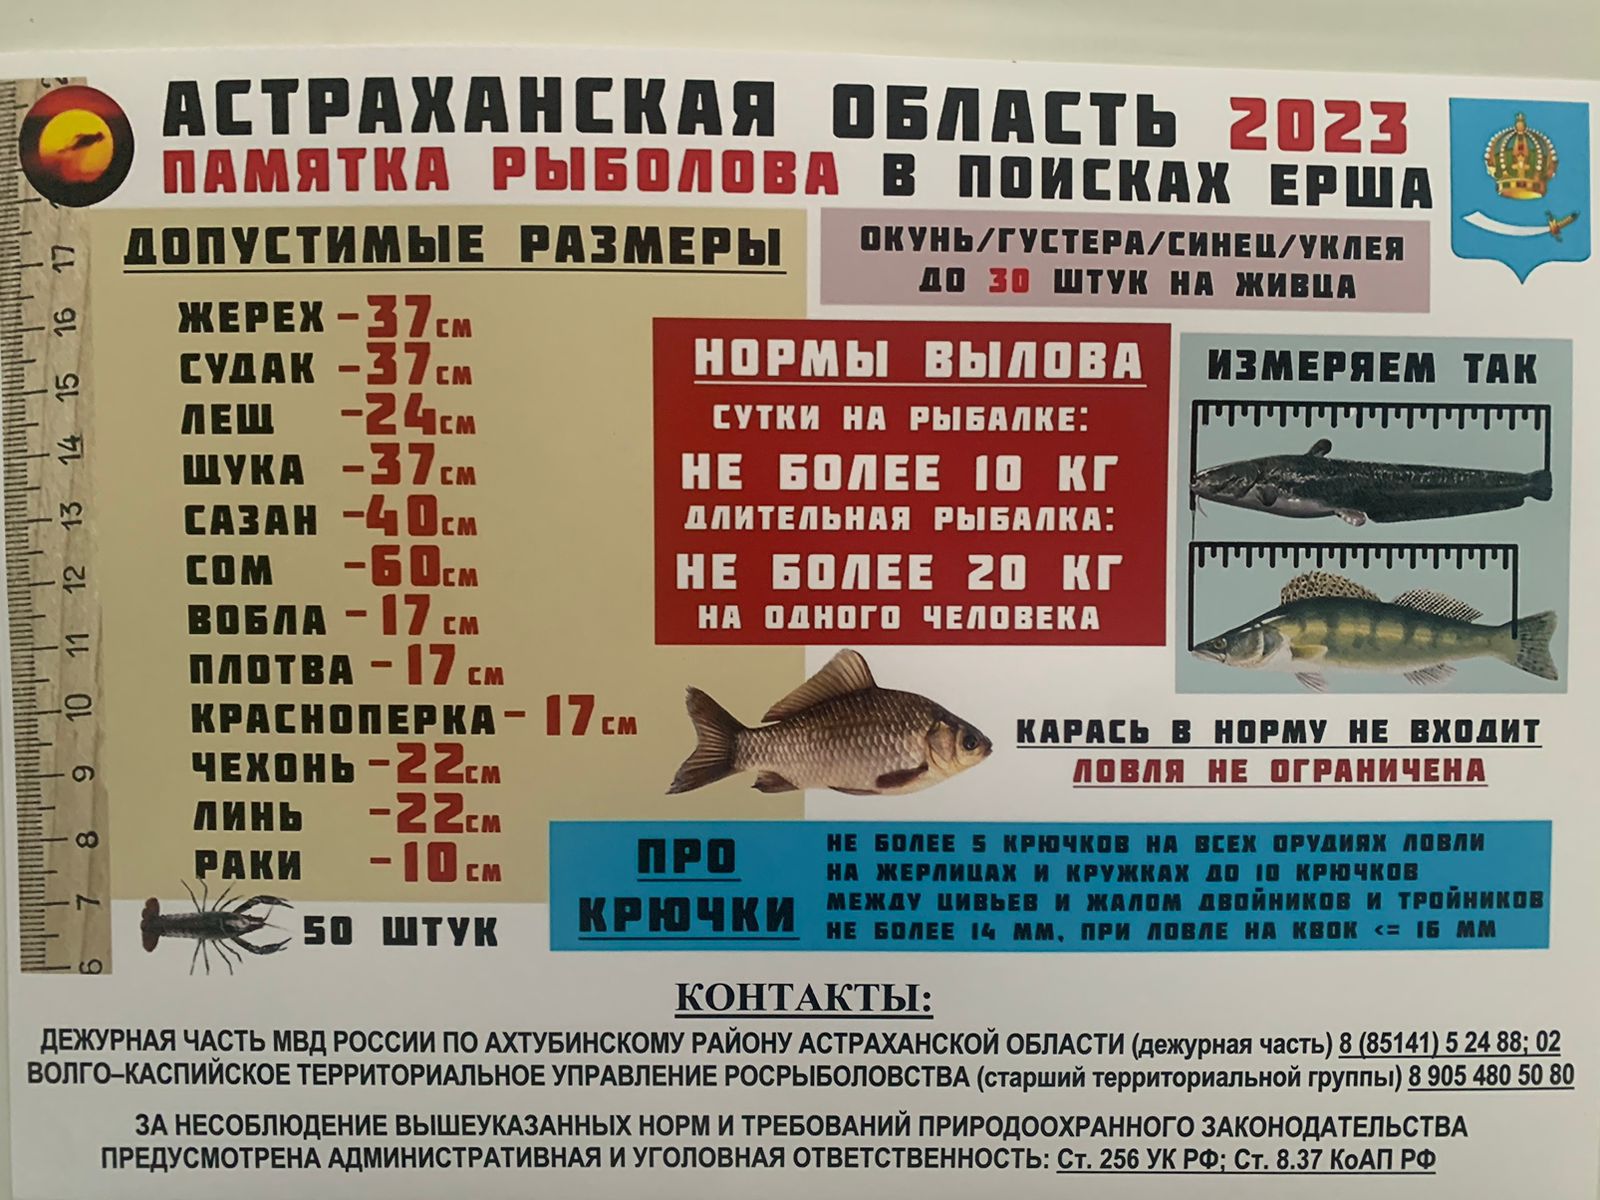 Отчеты о рыбалке в подмосковье 2023. Памятки для рыбаков. Памятка рыболова. Памятка для рыболовов любителей. Памятка рыбалки в Астраханской области.